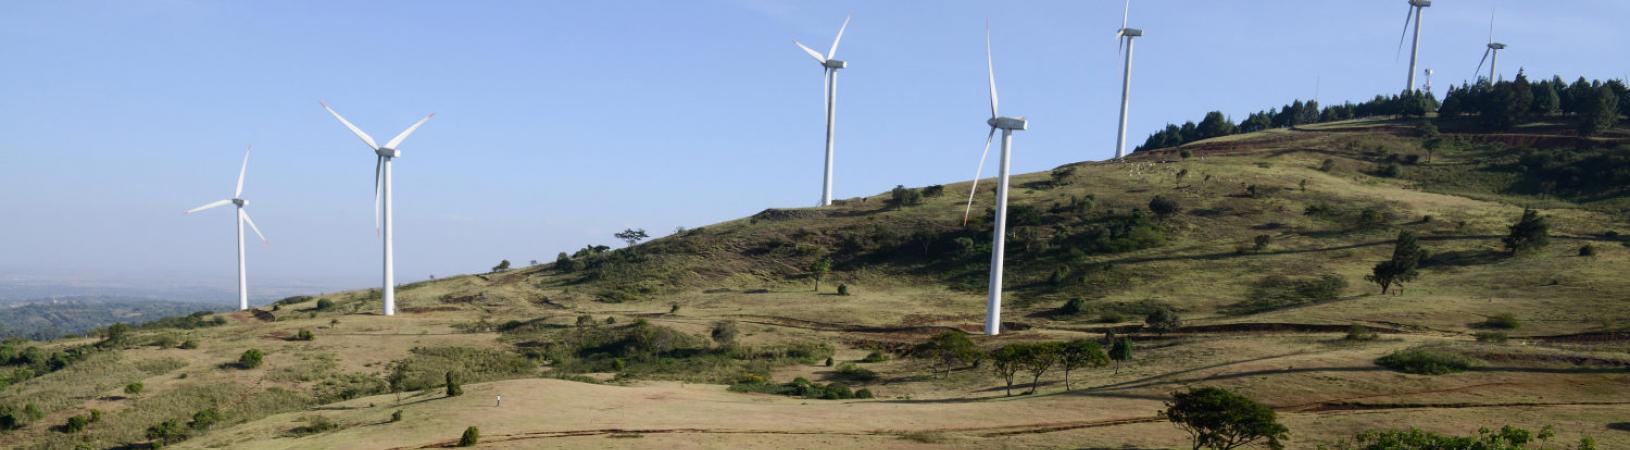 wind turbines hills